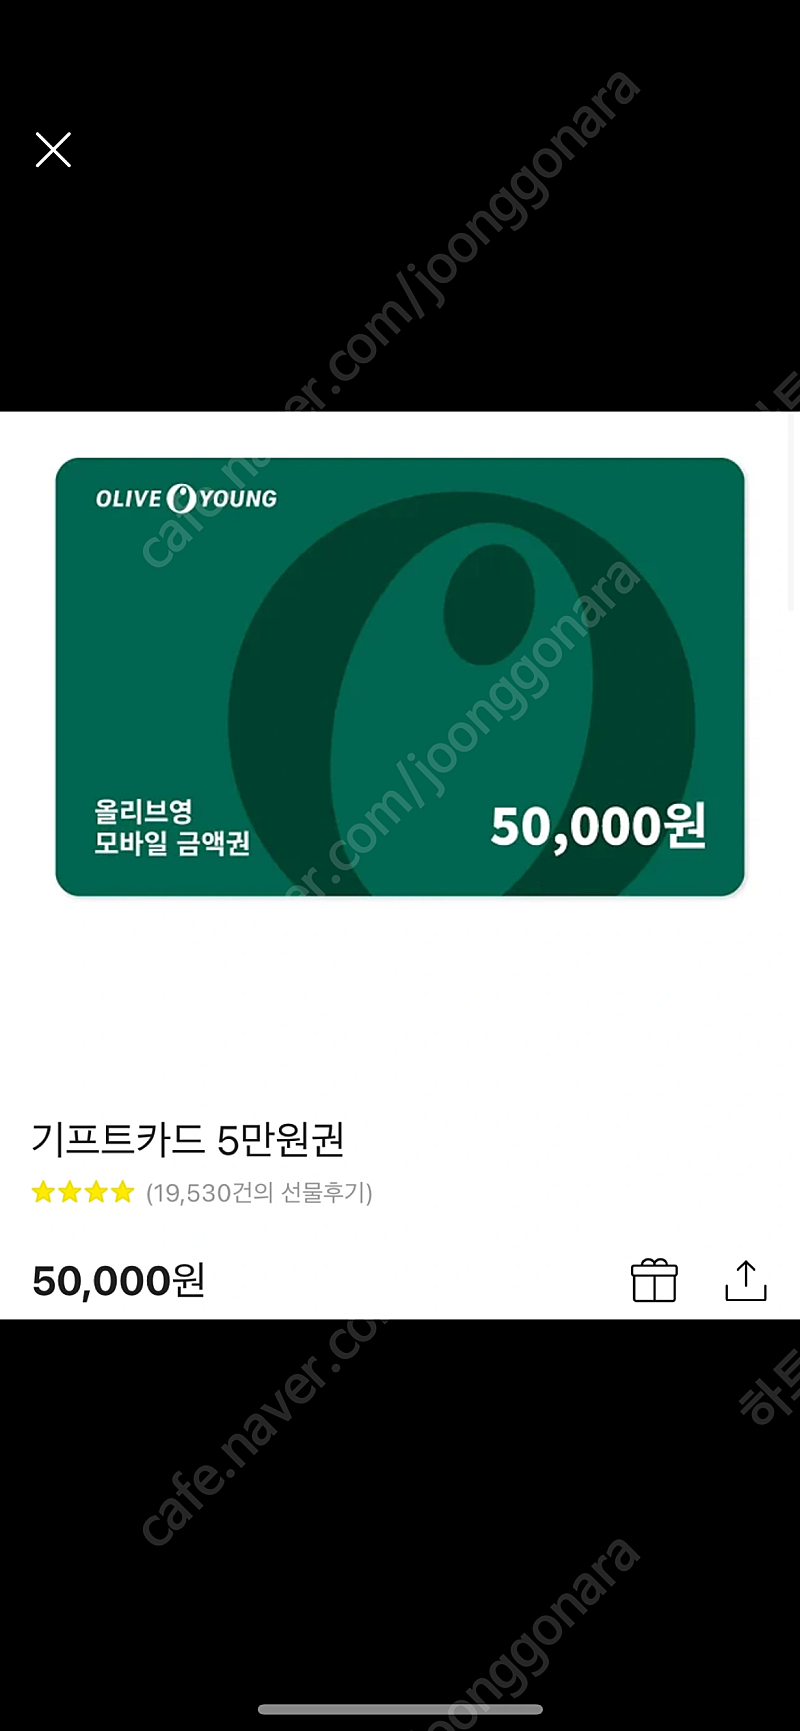 올리브영 5만원권 기프티콘 상품권